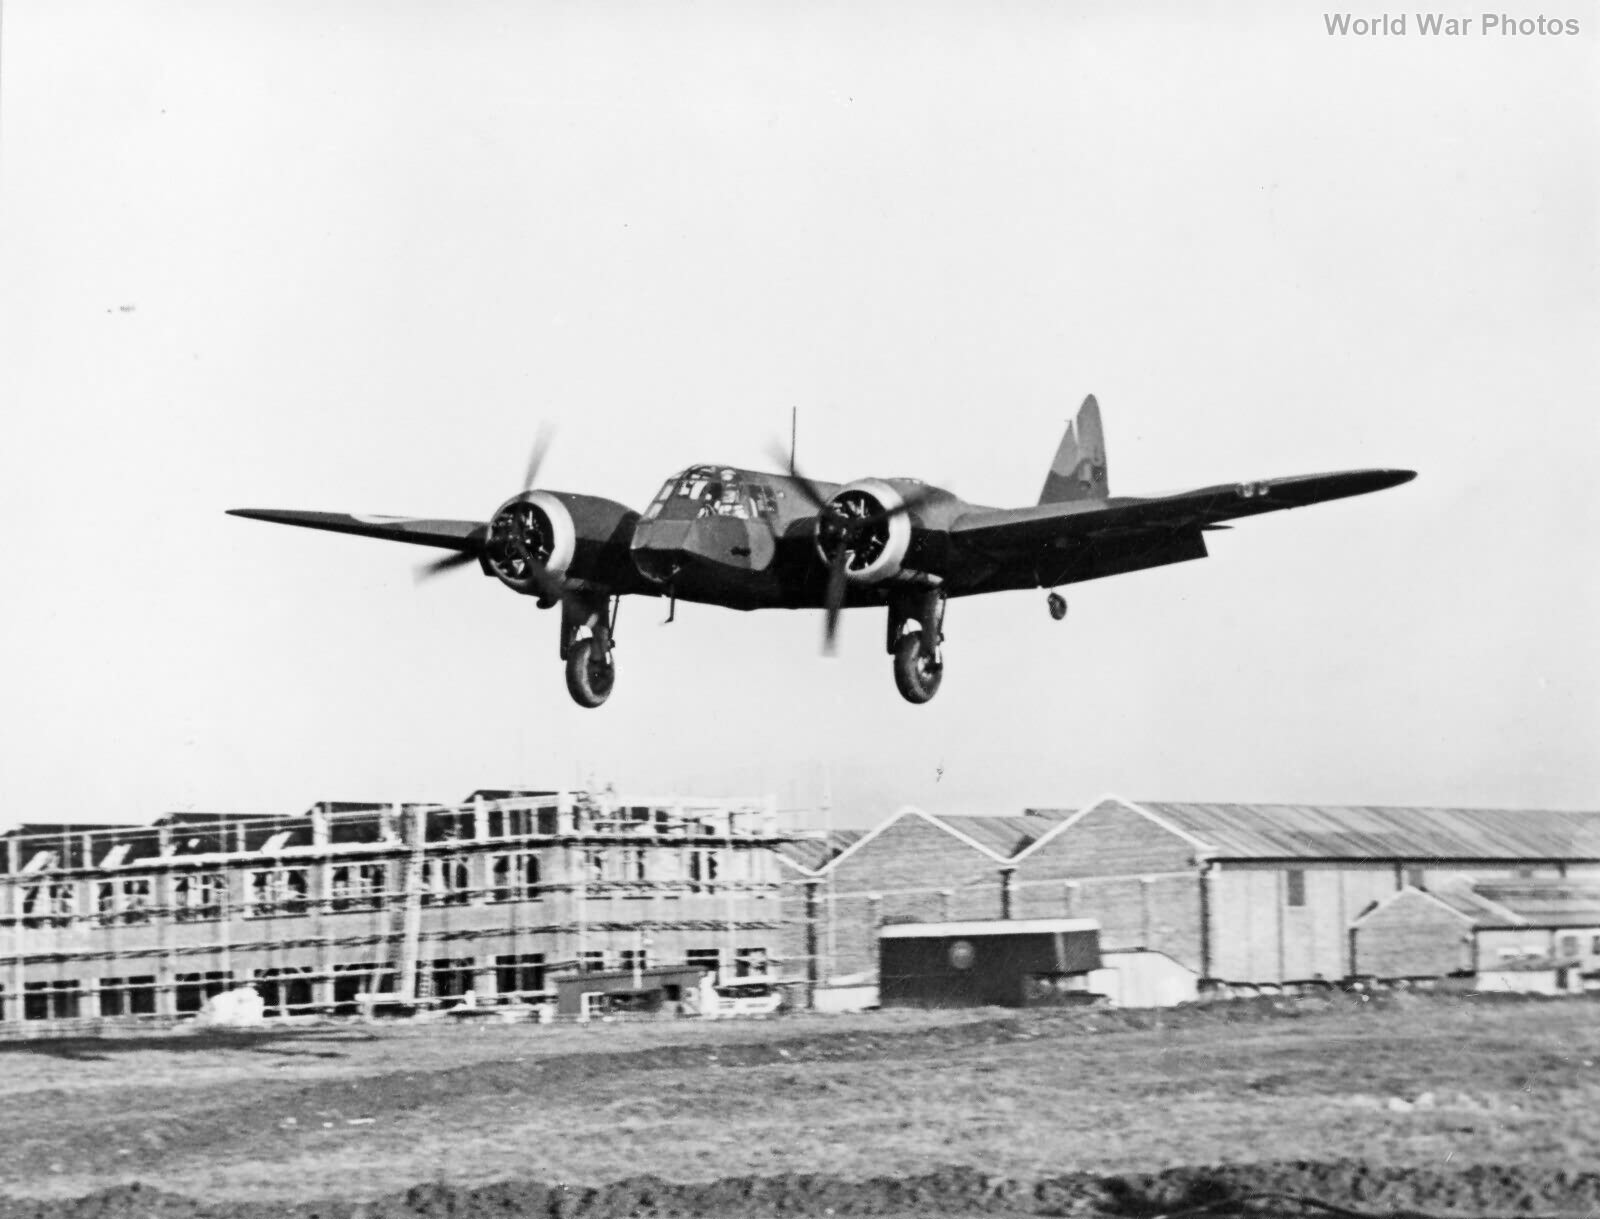 Blenheim at Bristol Aircraft Co 1938 | World War Photos